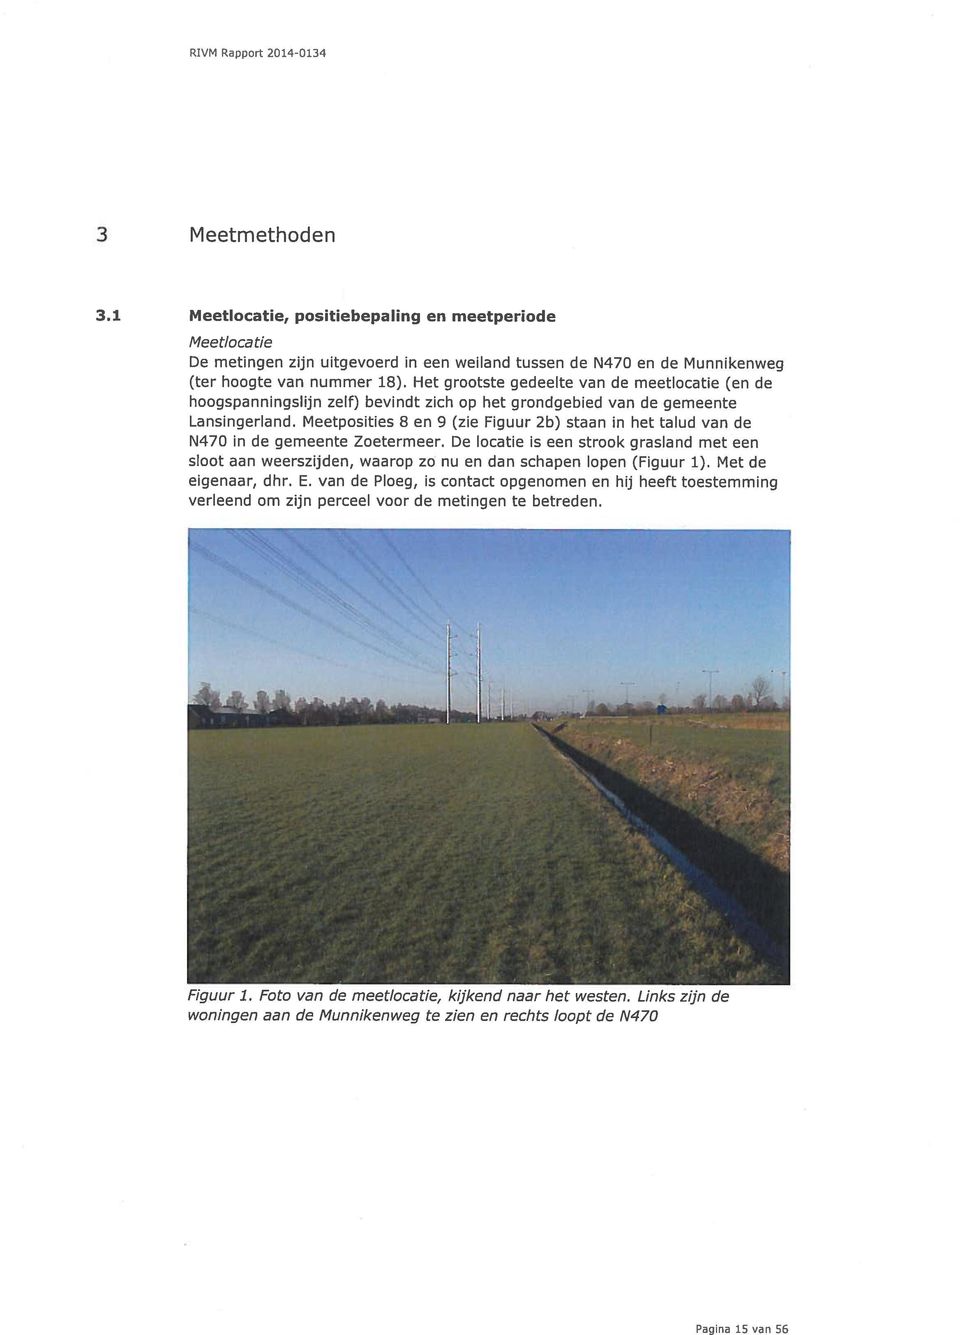 Meetposities 8 en 9 (zie Figuur 2b) staan in het talud van de N470 in de gemeente Zoetermeer.